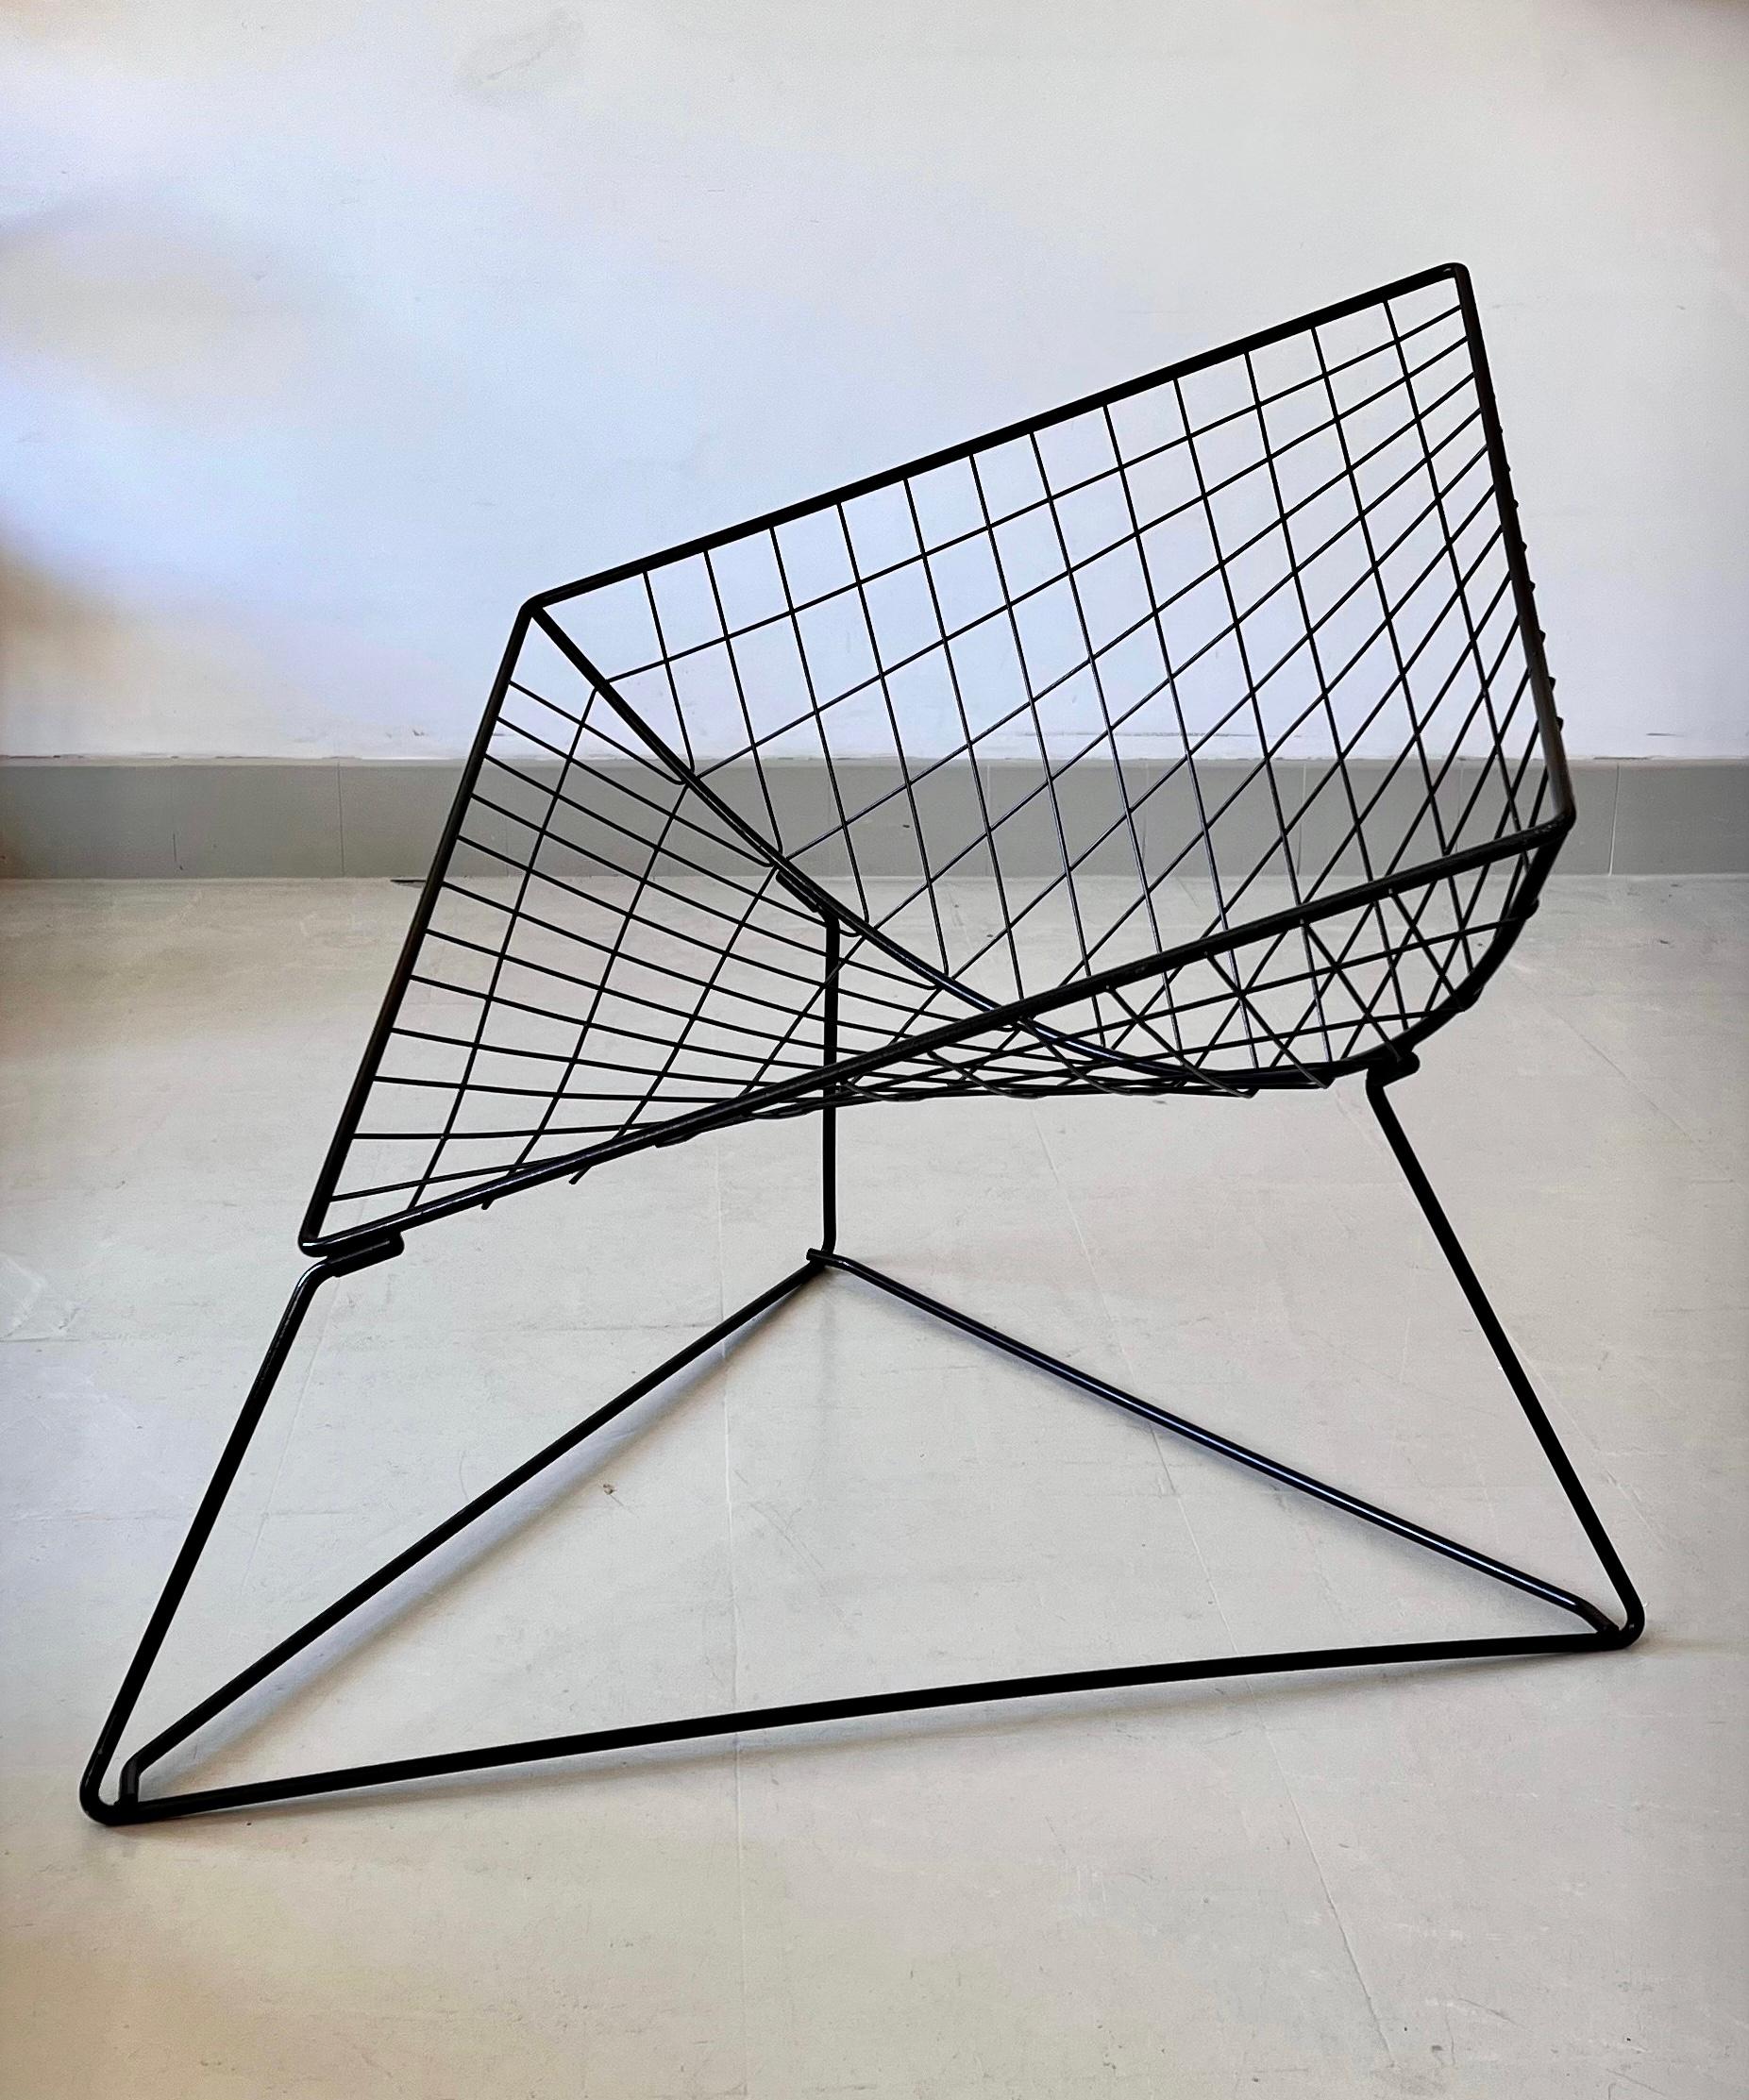 Fauteuil en acier tubulaire créé par le designer danois Niels Gammelgaard pour Ikea. 
Une pièce emblématique, un véritable classique du design danois. En très bon état. 
La structure en métal laqué forme un diamant posé sur un triangle. La